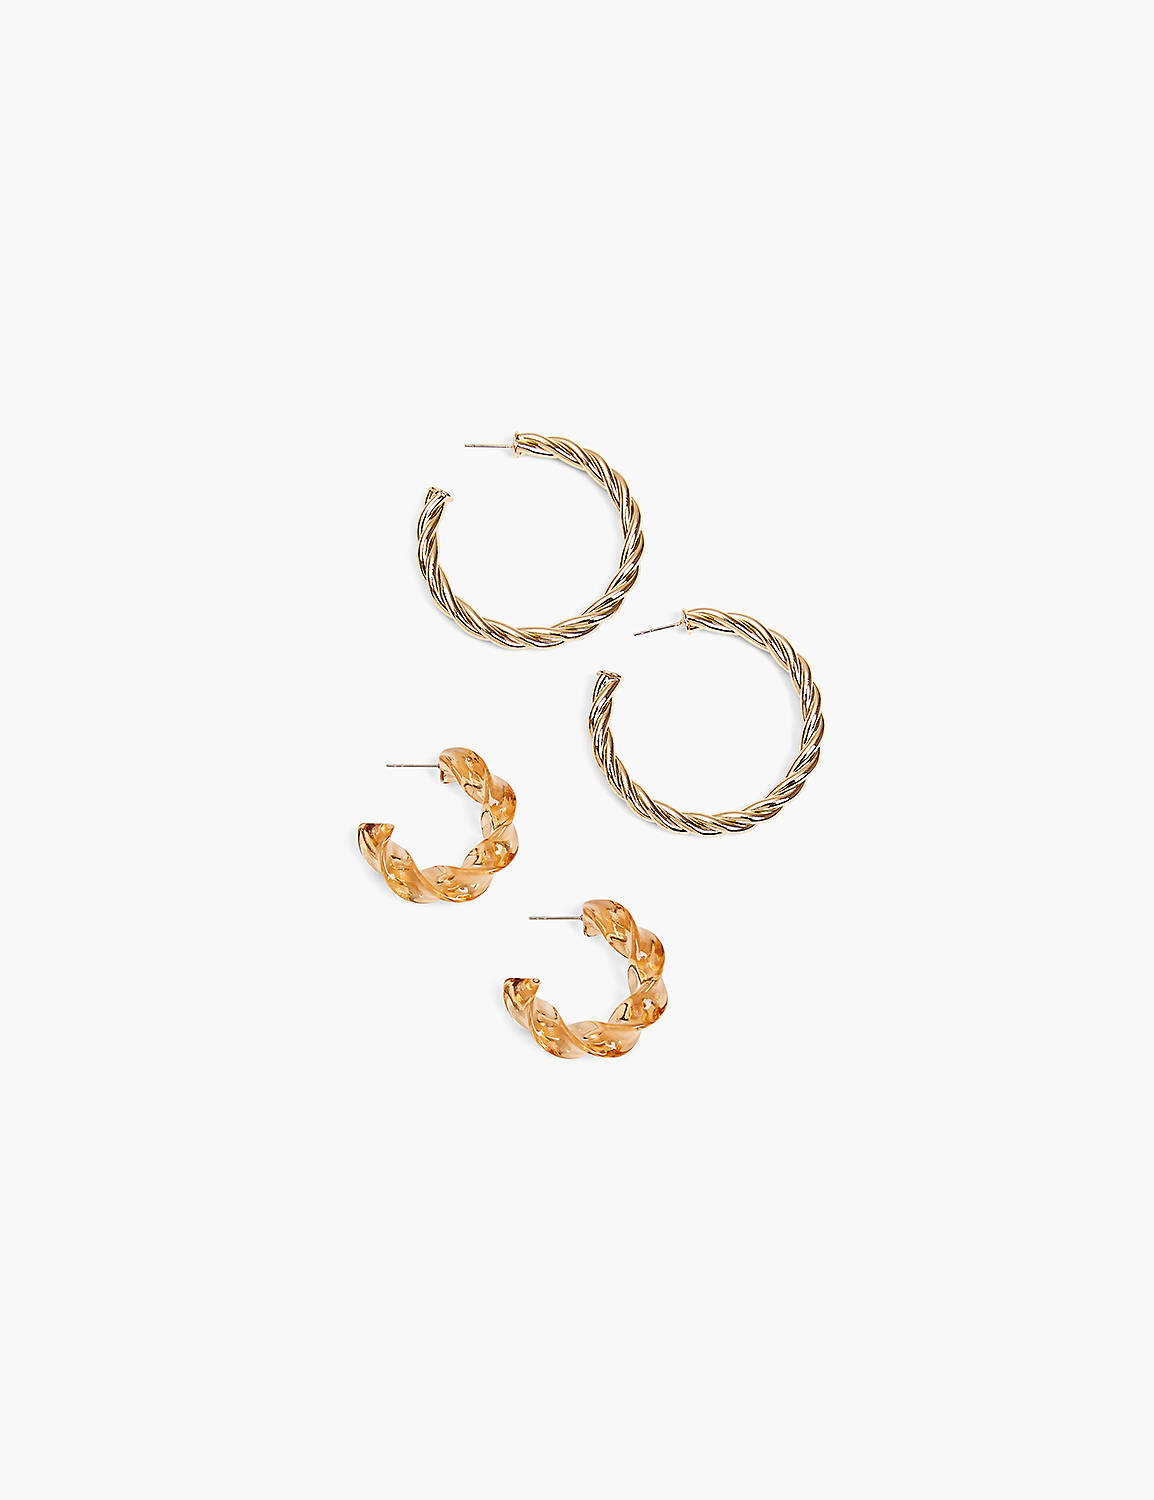 Twisted Hoop Earrings - 2 Pack Product Image 1